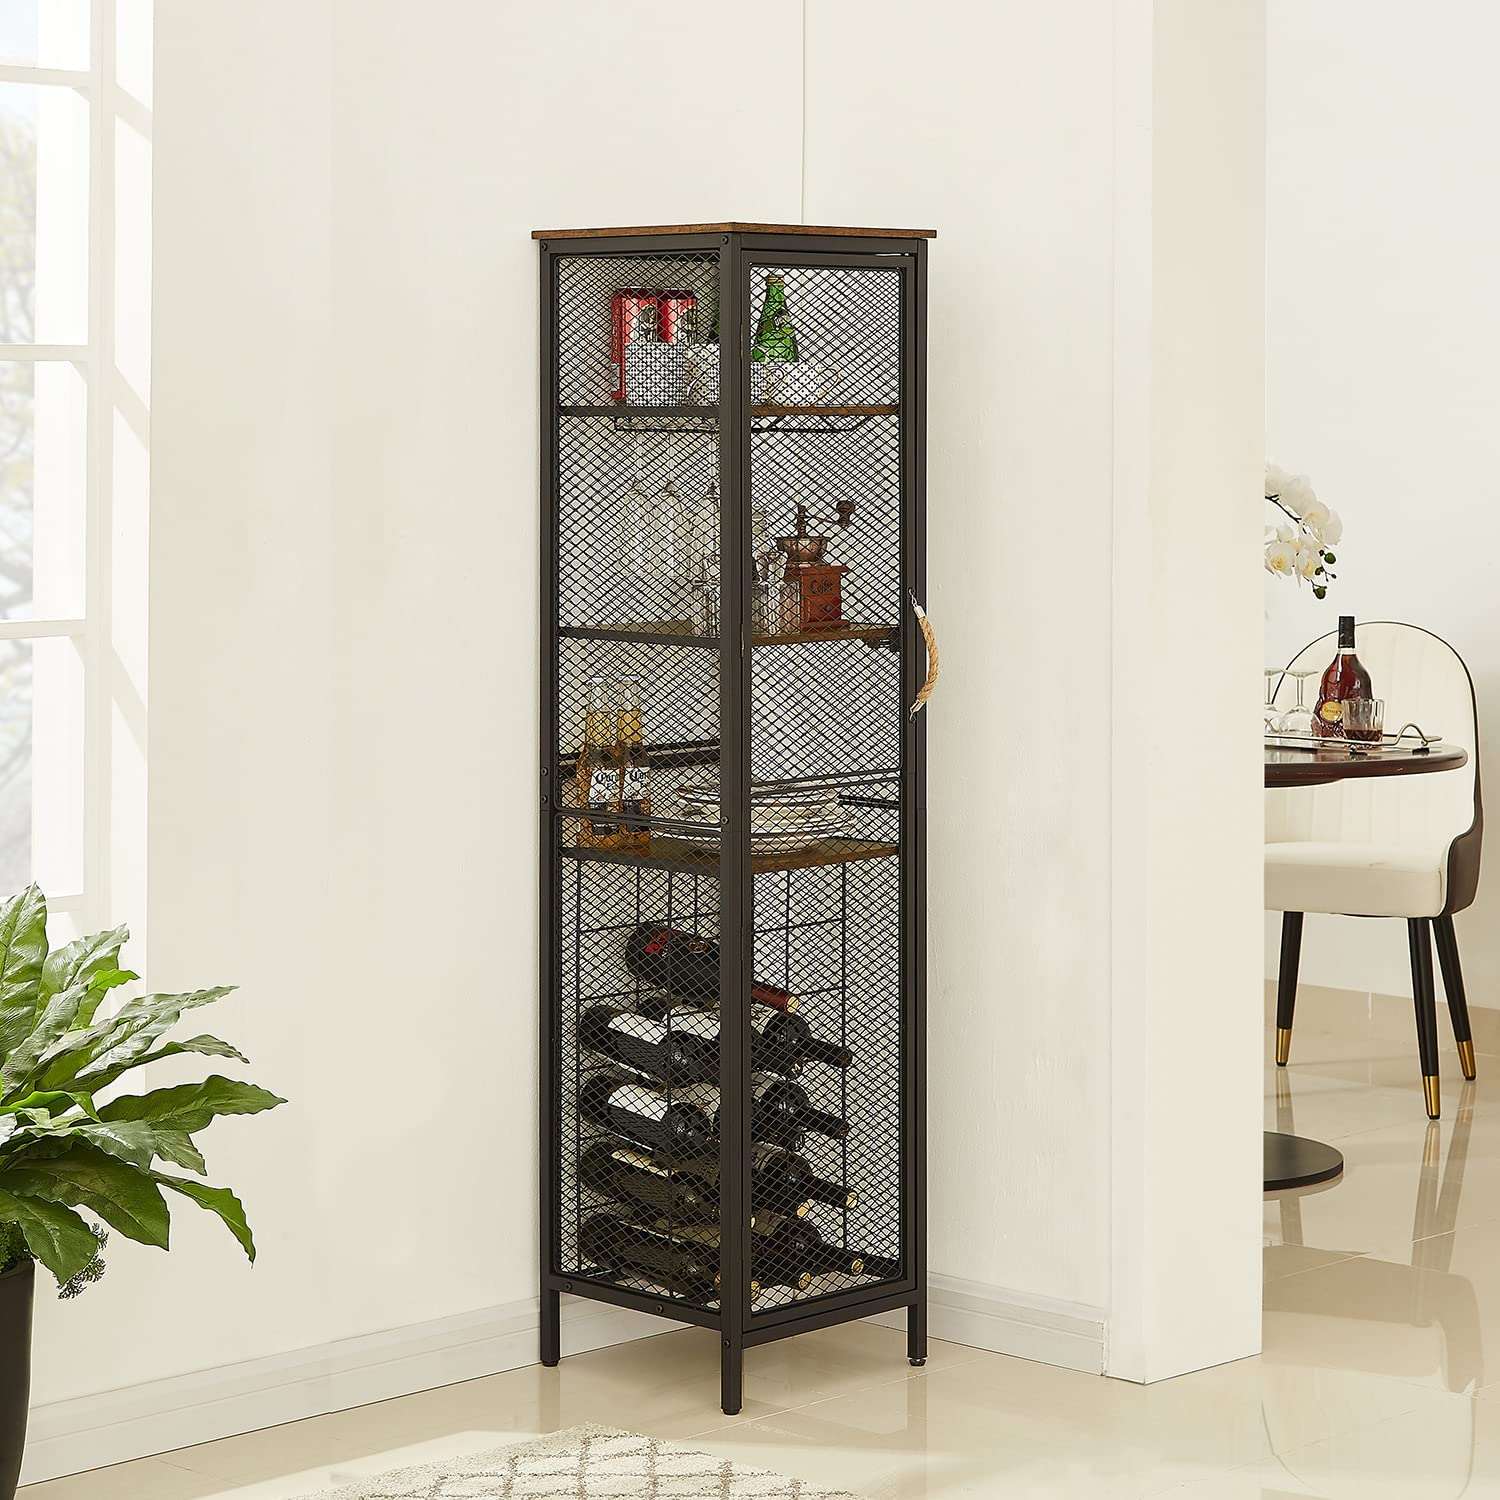 VECELO 3-Tier Wine Racks Cabinet with Door